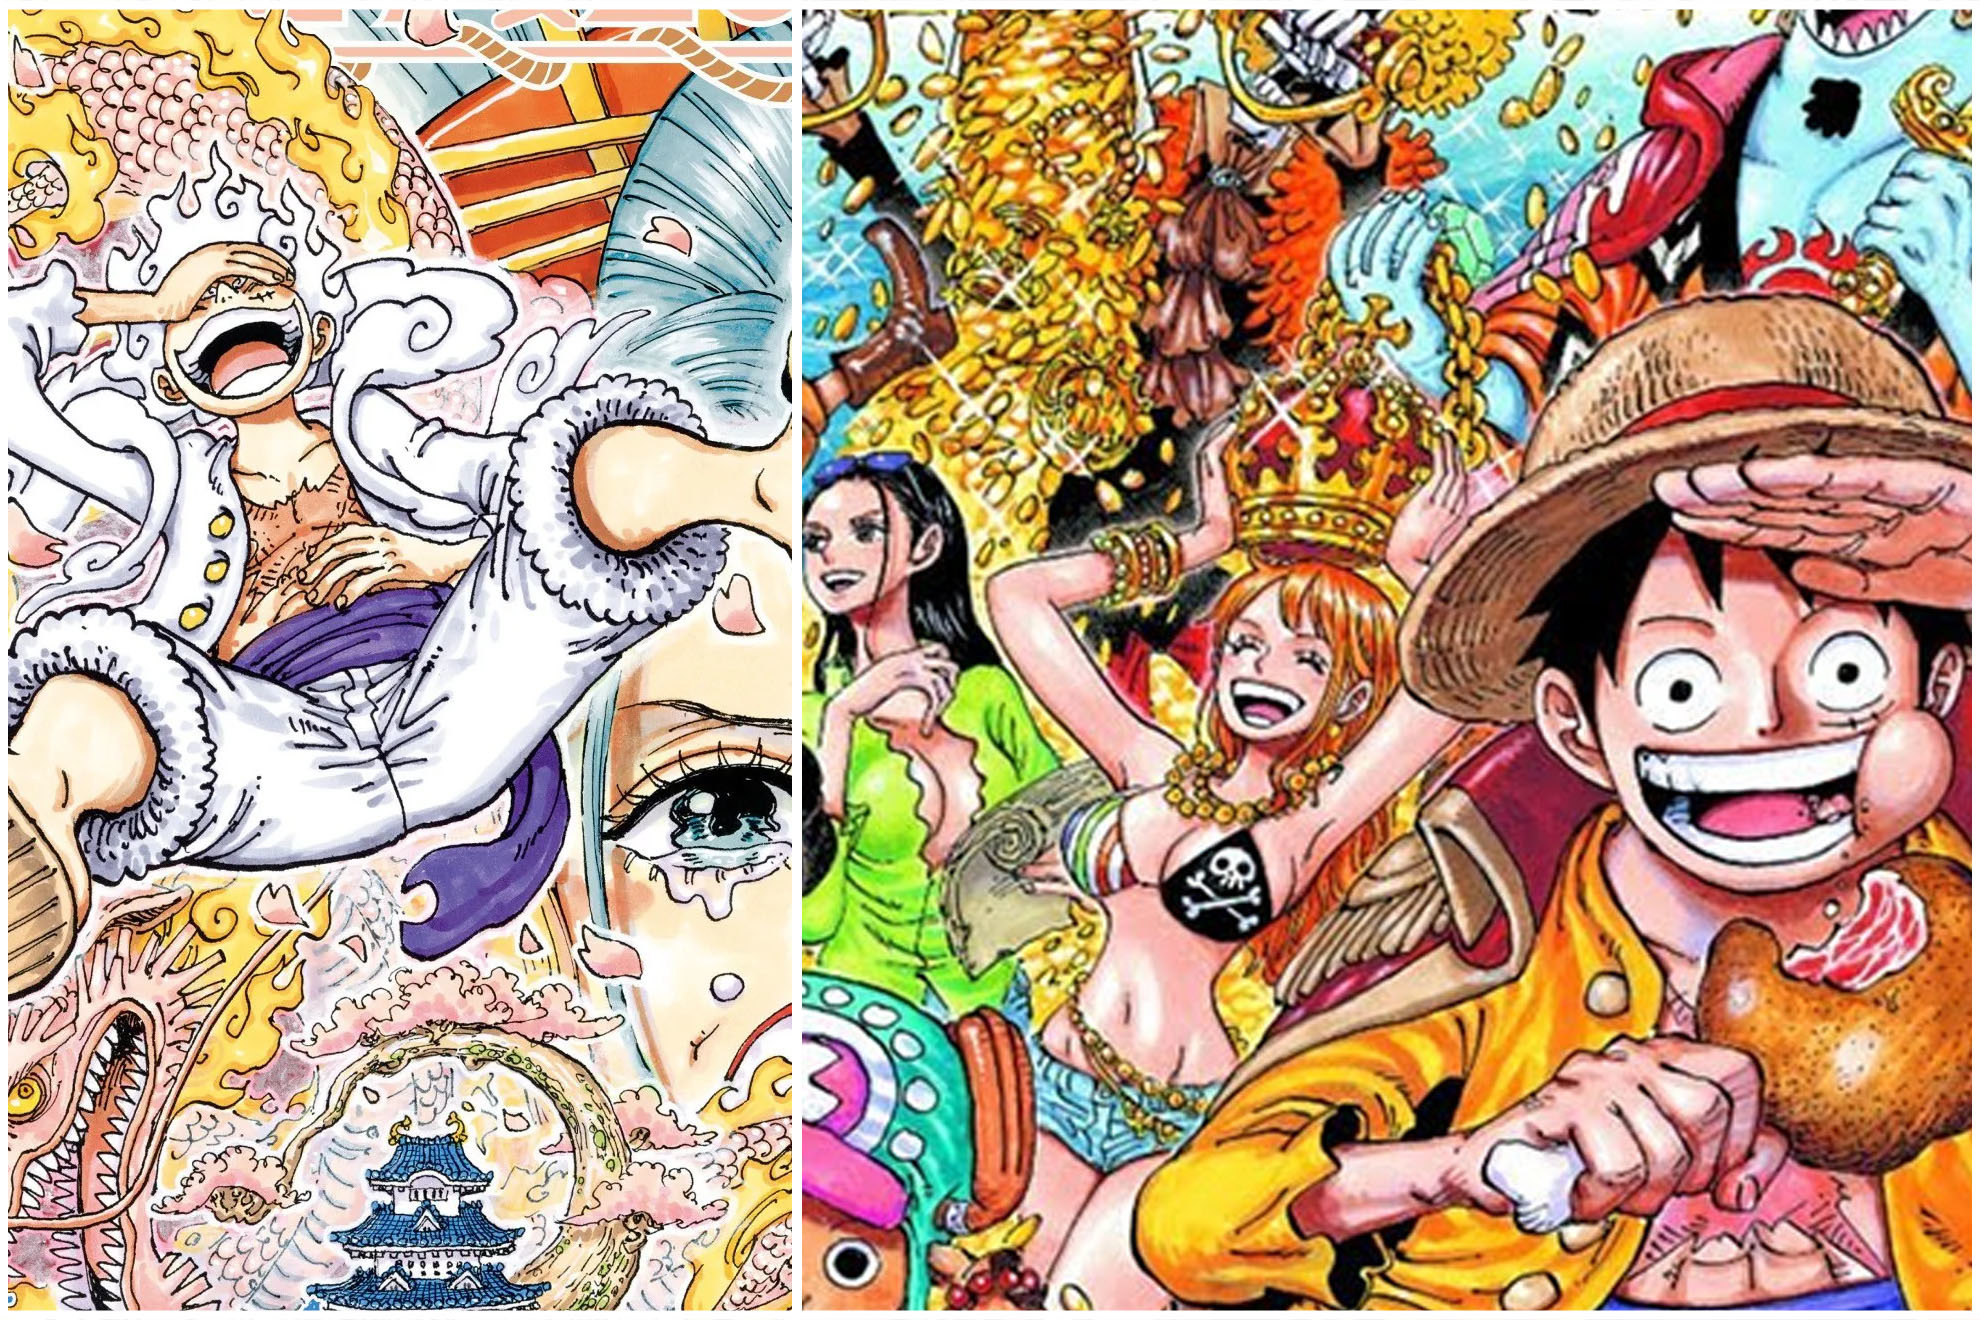 Dragon Ball Super manga 89 español completo manga plus: cuándo